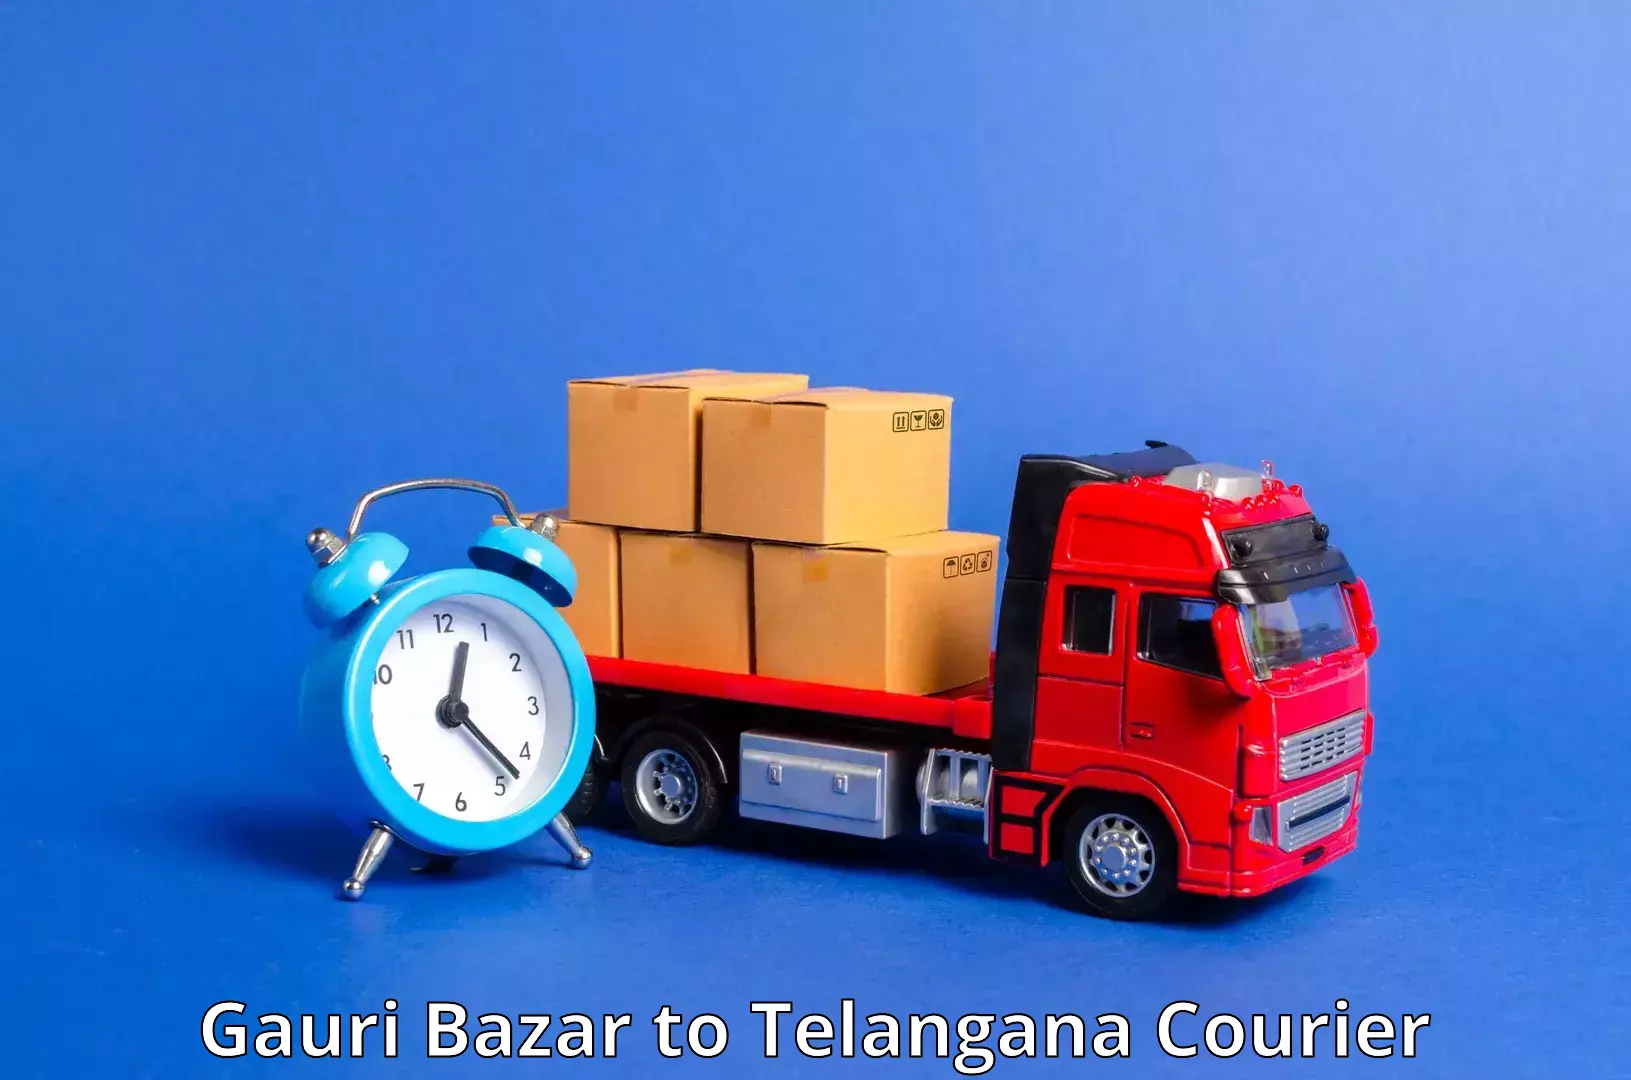 Urgent courier needs Gauri Bazar to Aswaraopeta